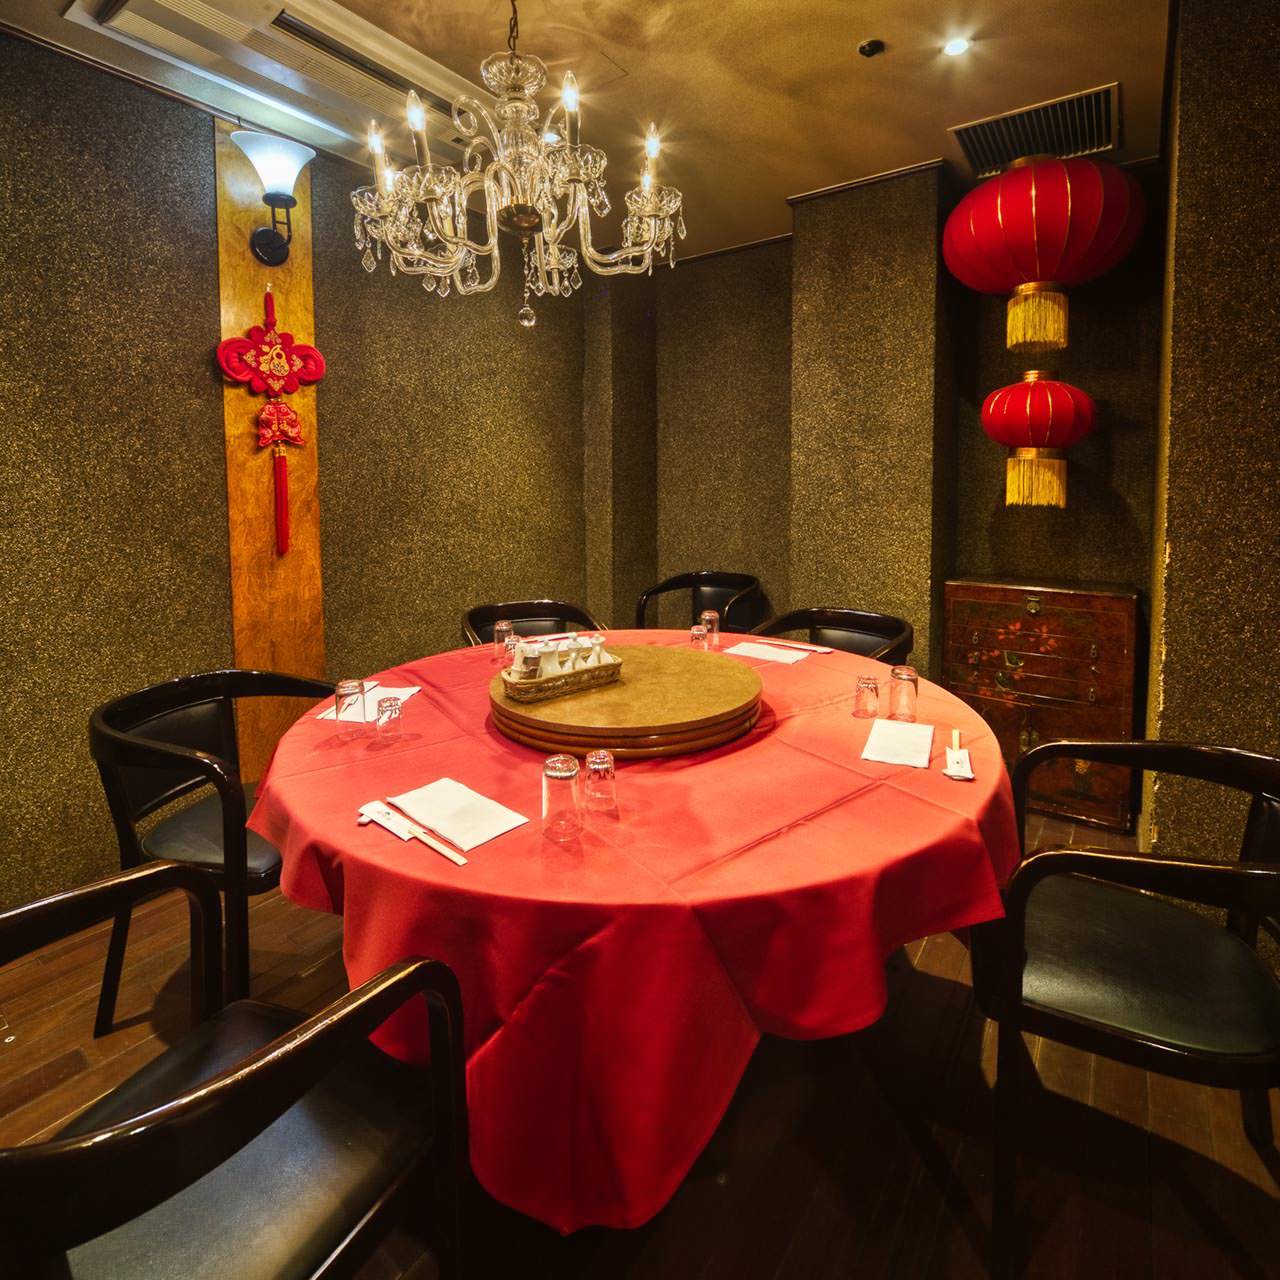 大円卓で楽しむ中国様式の美個室空間